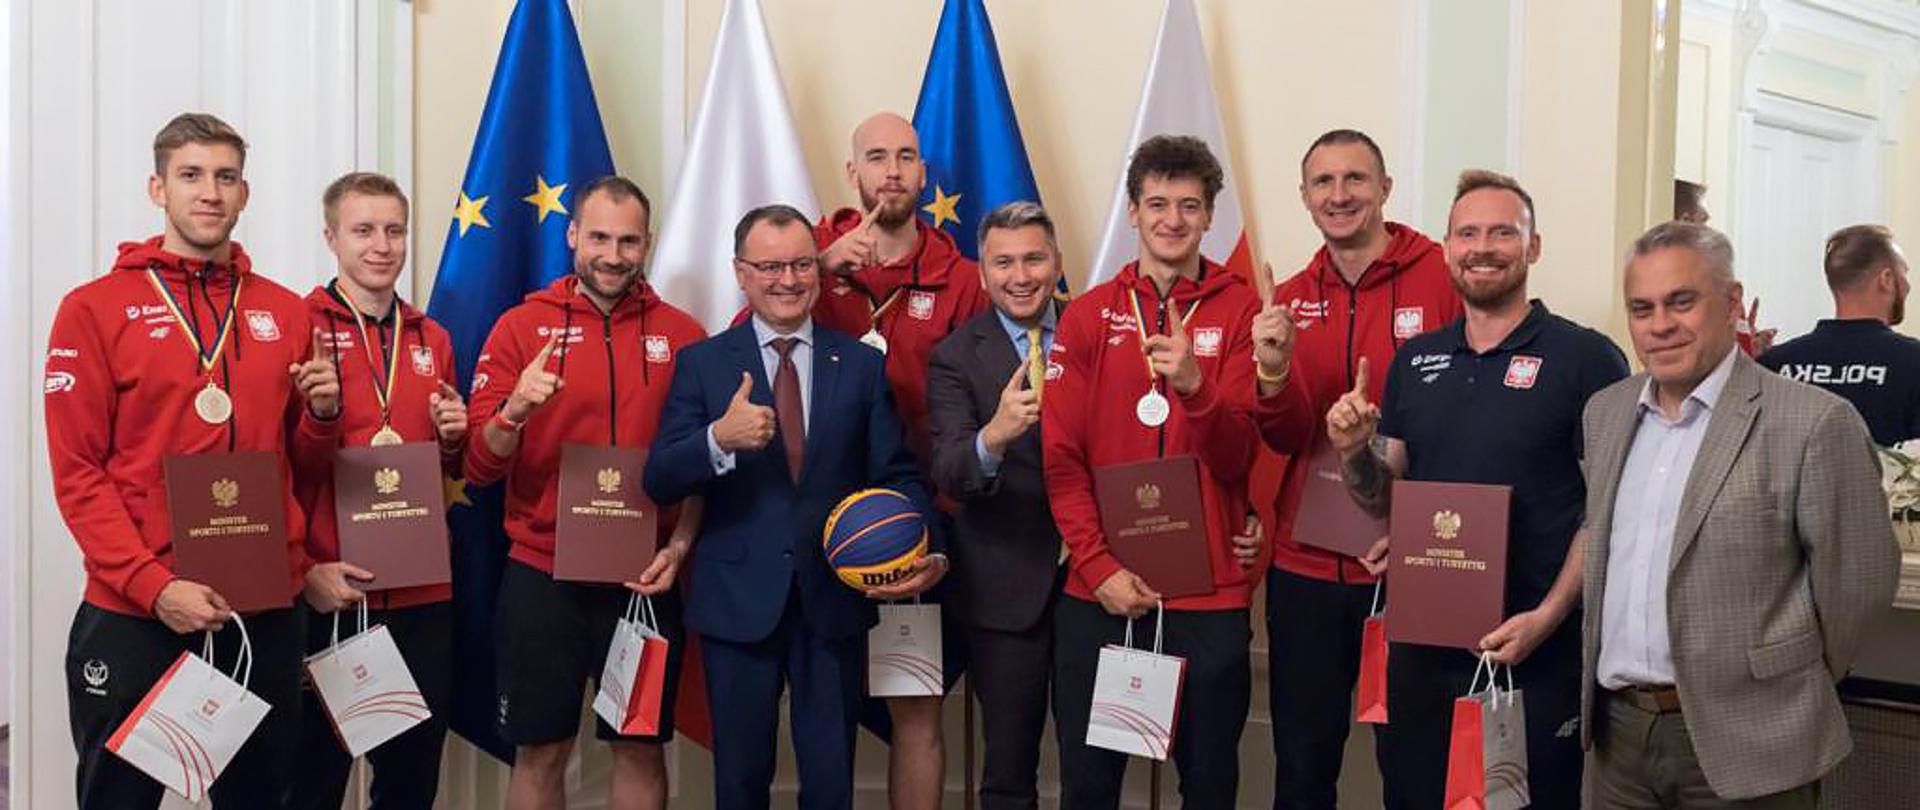 Spotkanie sekretarza stanu Arkadiusza Czartoryskiego z mistrzami świata - koszykarzami 3x3 U23 - zdjęcie zbiorowe wiceministra z koszykarzami na tle flag polskich i UE